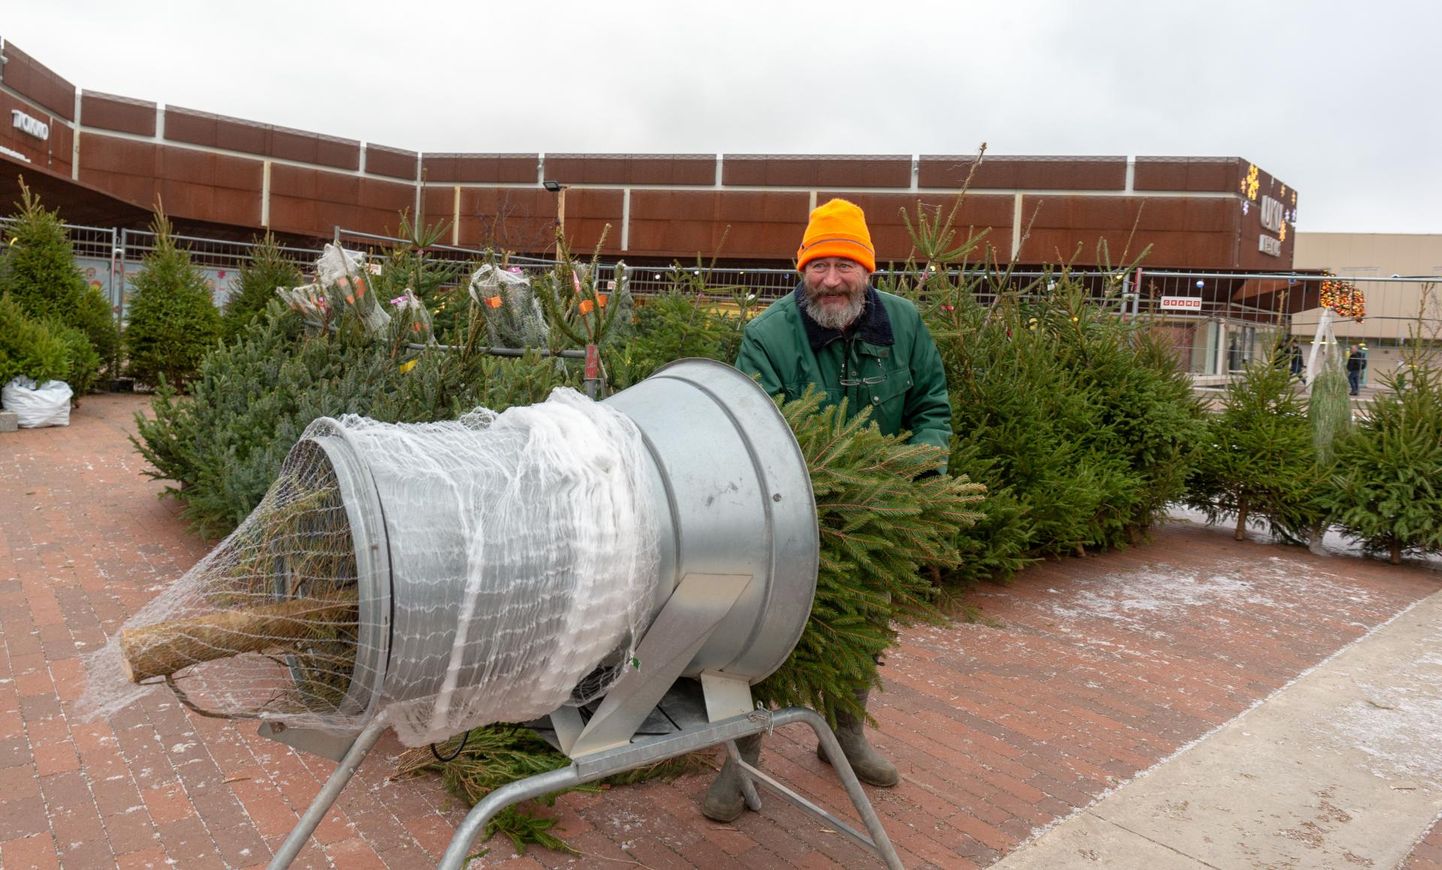 Uku keskuse juures jõulupuid müüv Endel Soosaar näitas, kuidas puu võrku pakitakse.